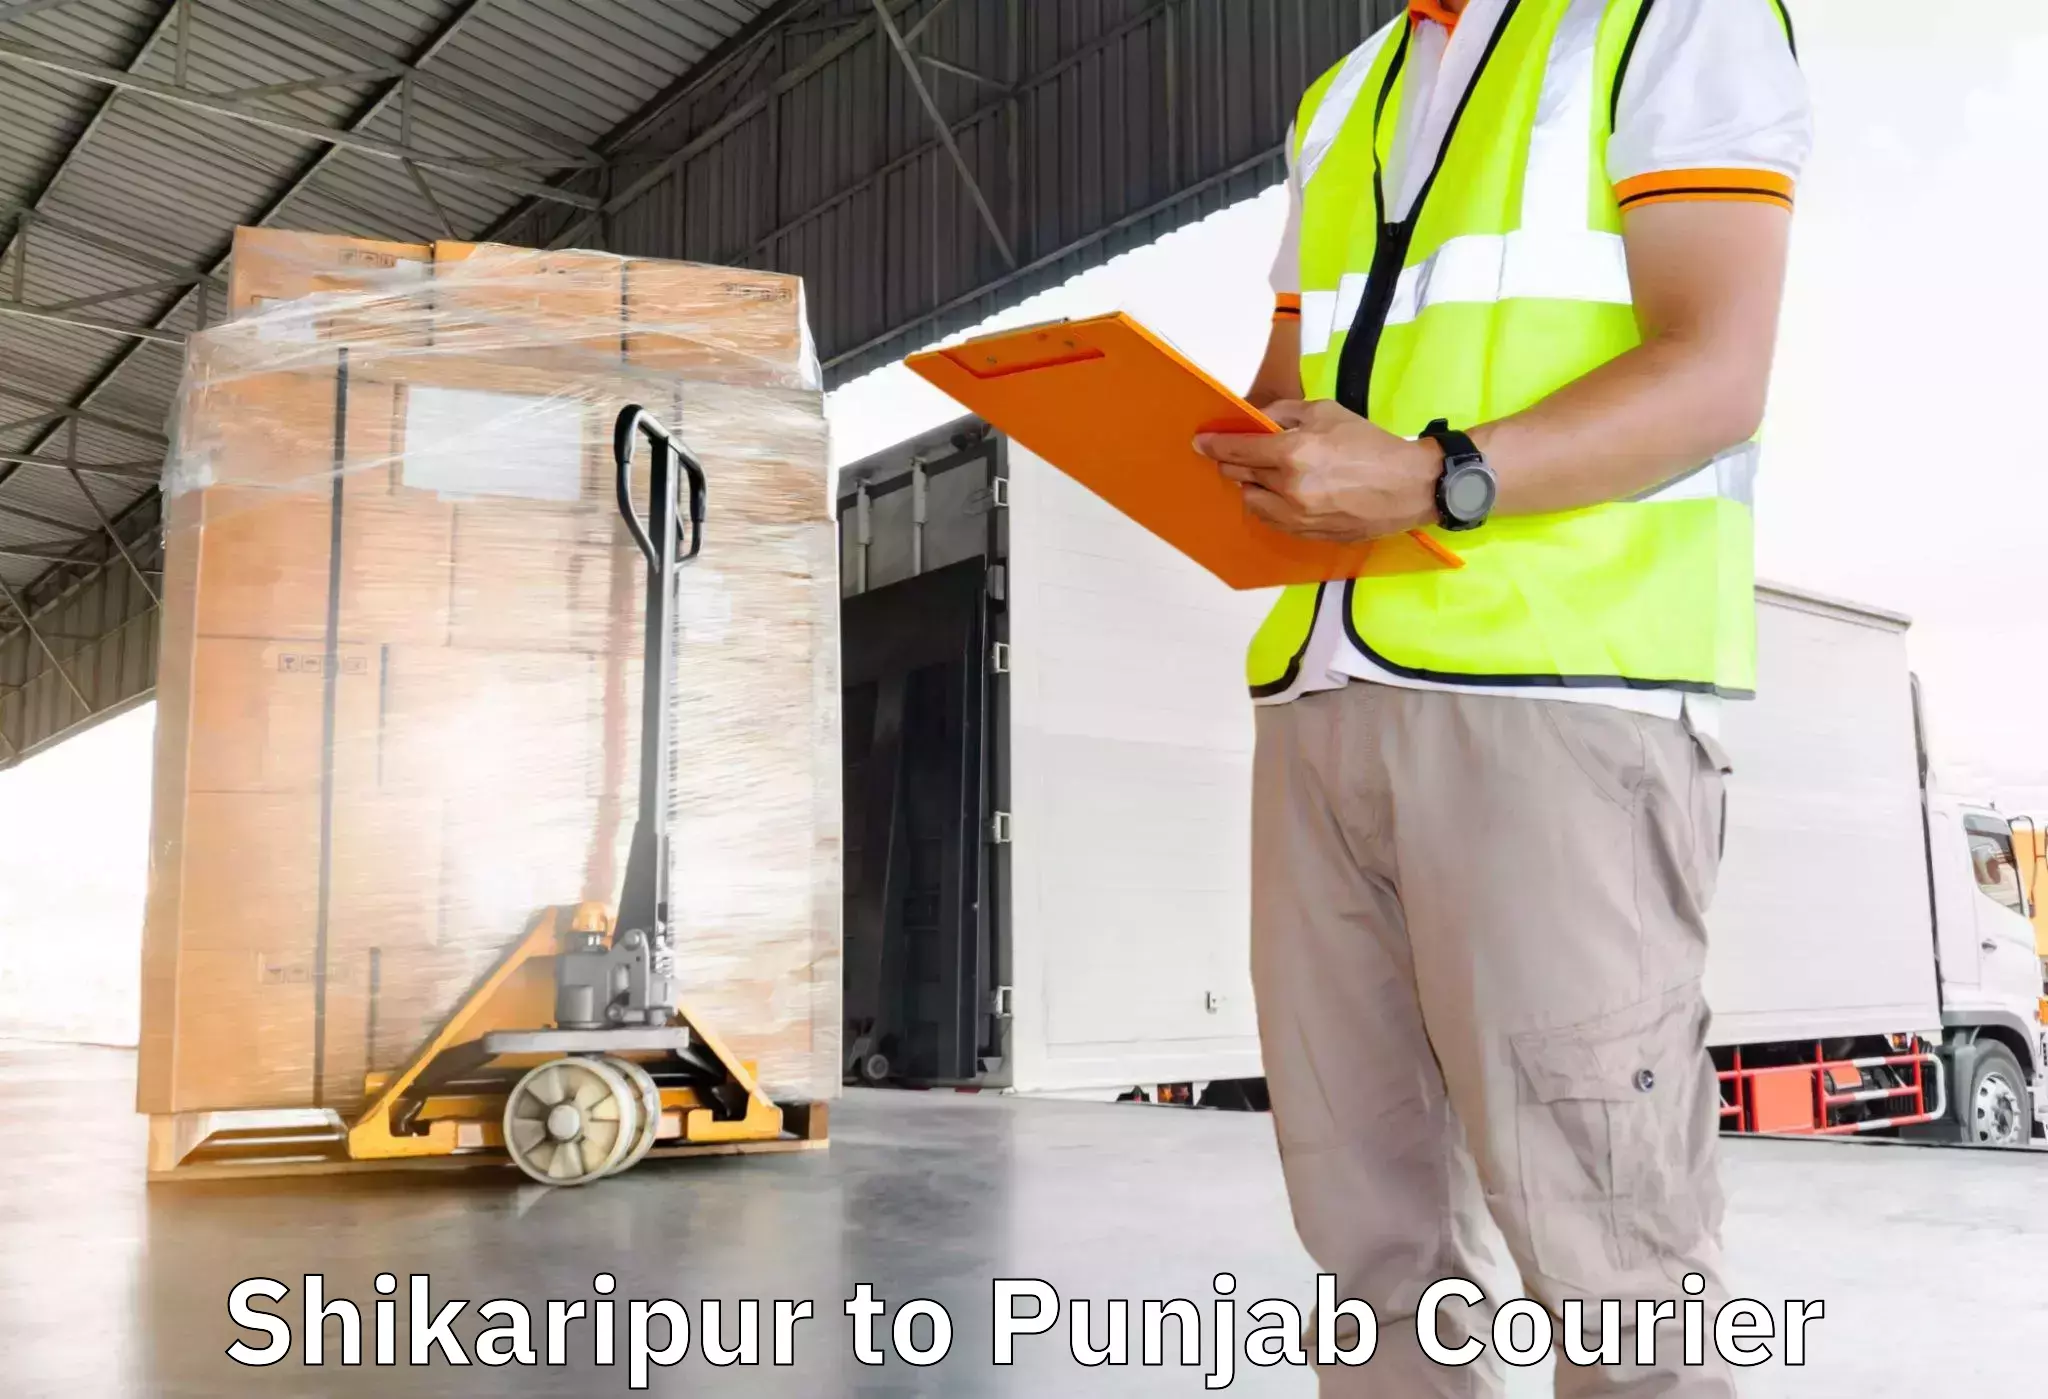 Flexible moving solutions Shikaripur to Jhunir